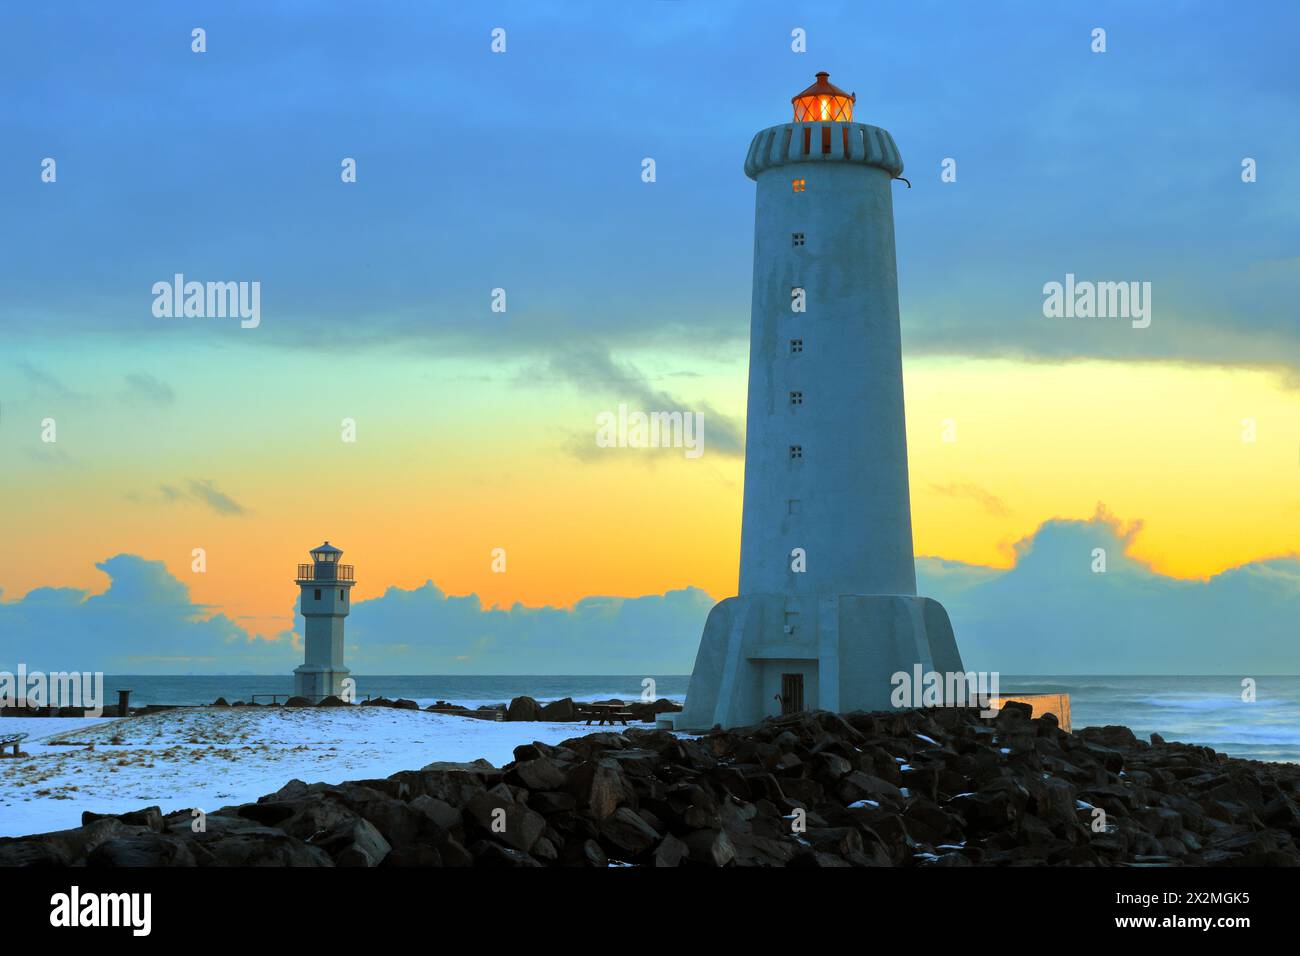 Géographie / voyage, Islande, Vesturland, Akranes, ancien et nouveau phare, coucher de soleil, Islande occidentale, ADDITIONAL-RIGHTS-LEARANCE-INFO-NOT-AVAILABLE Banque D'Images